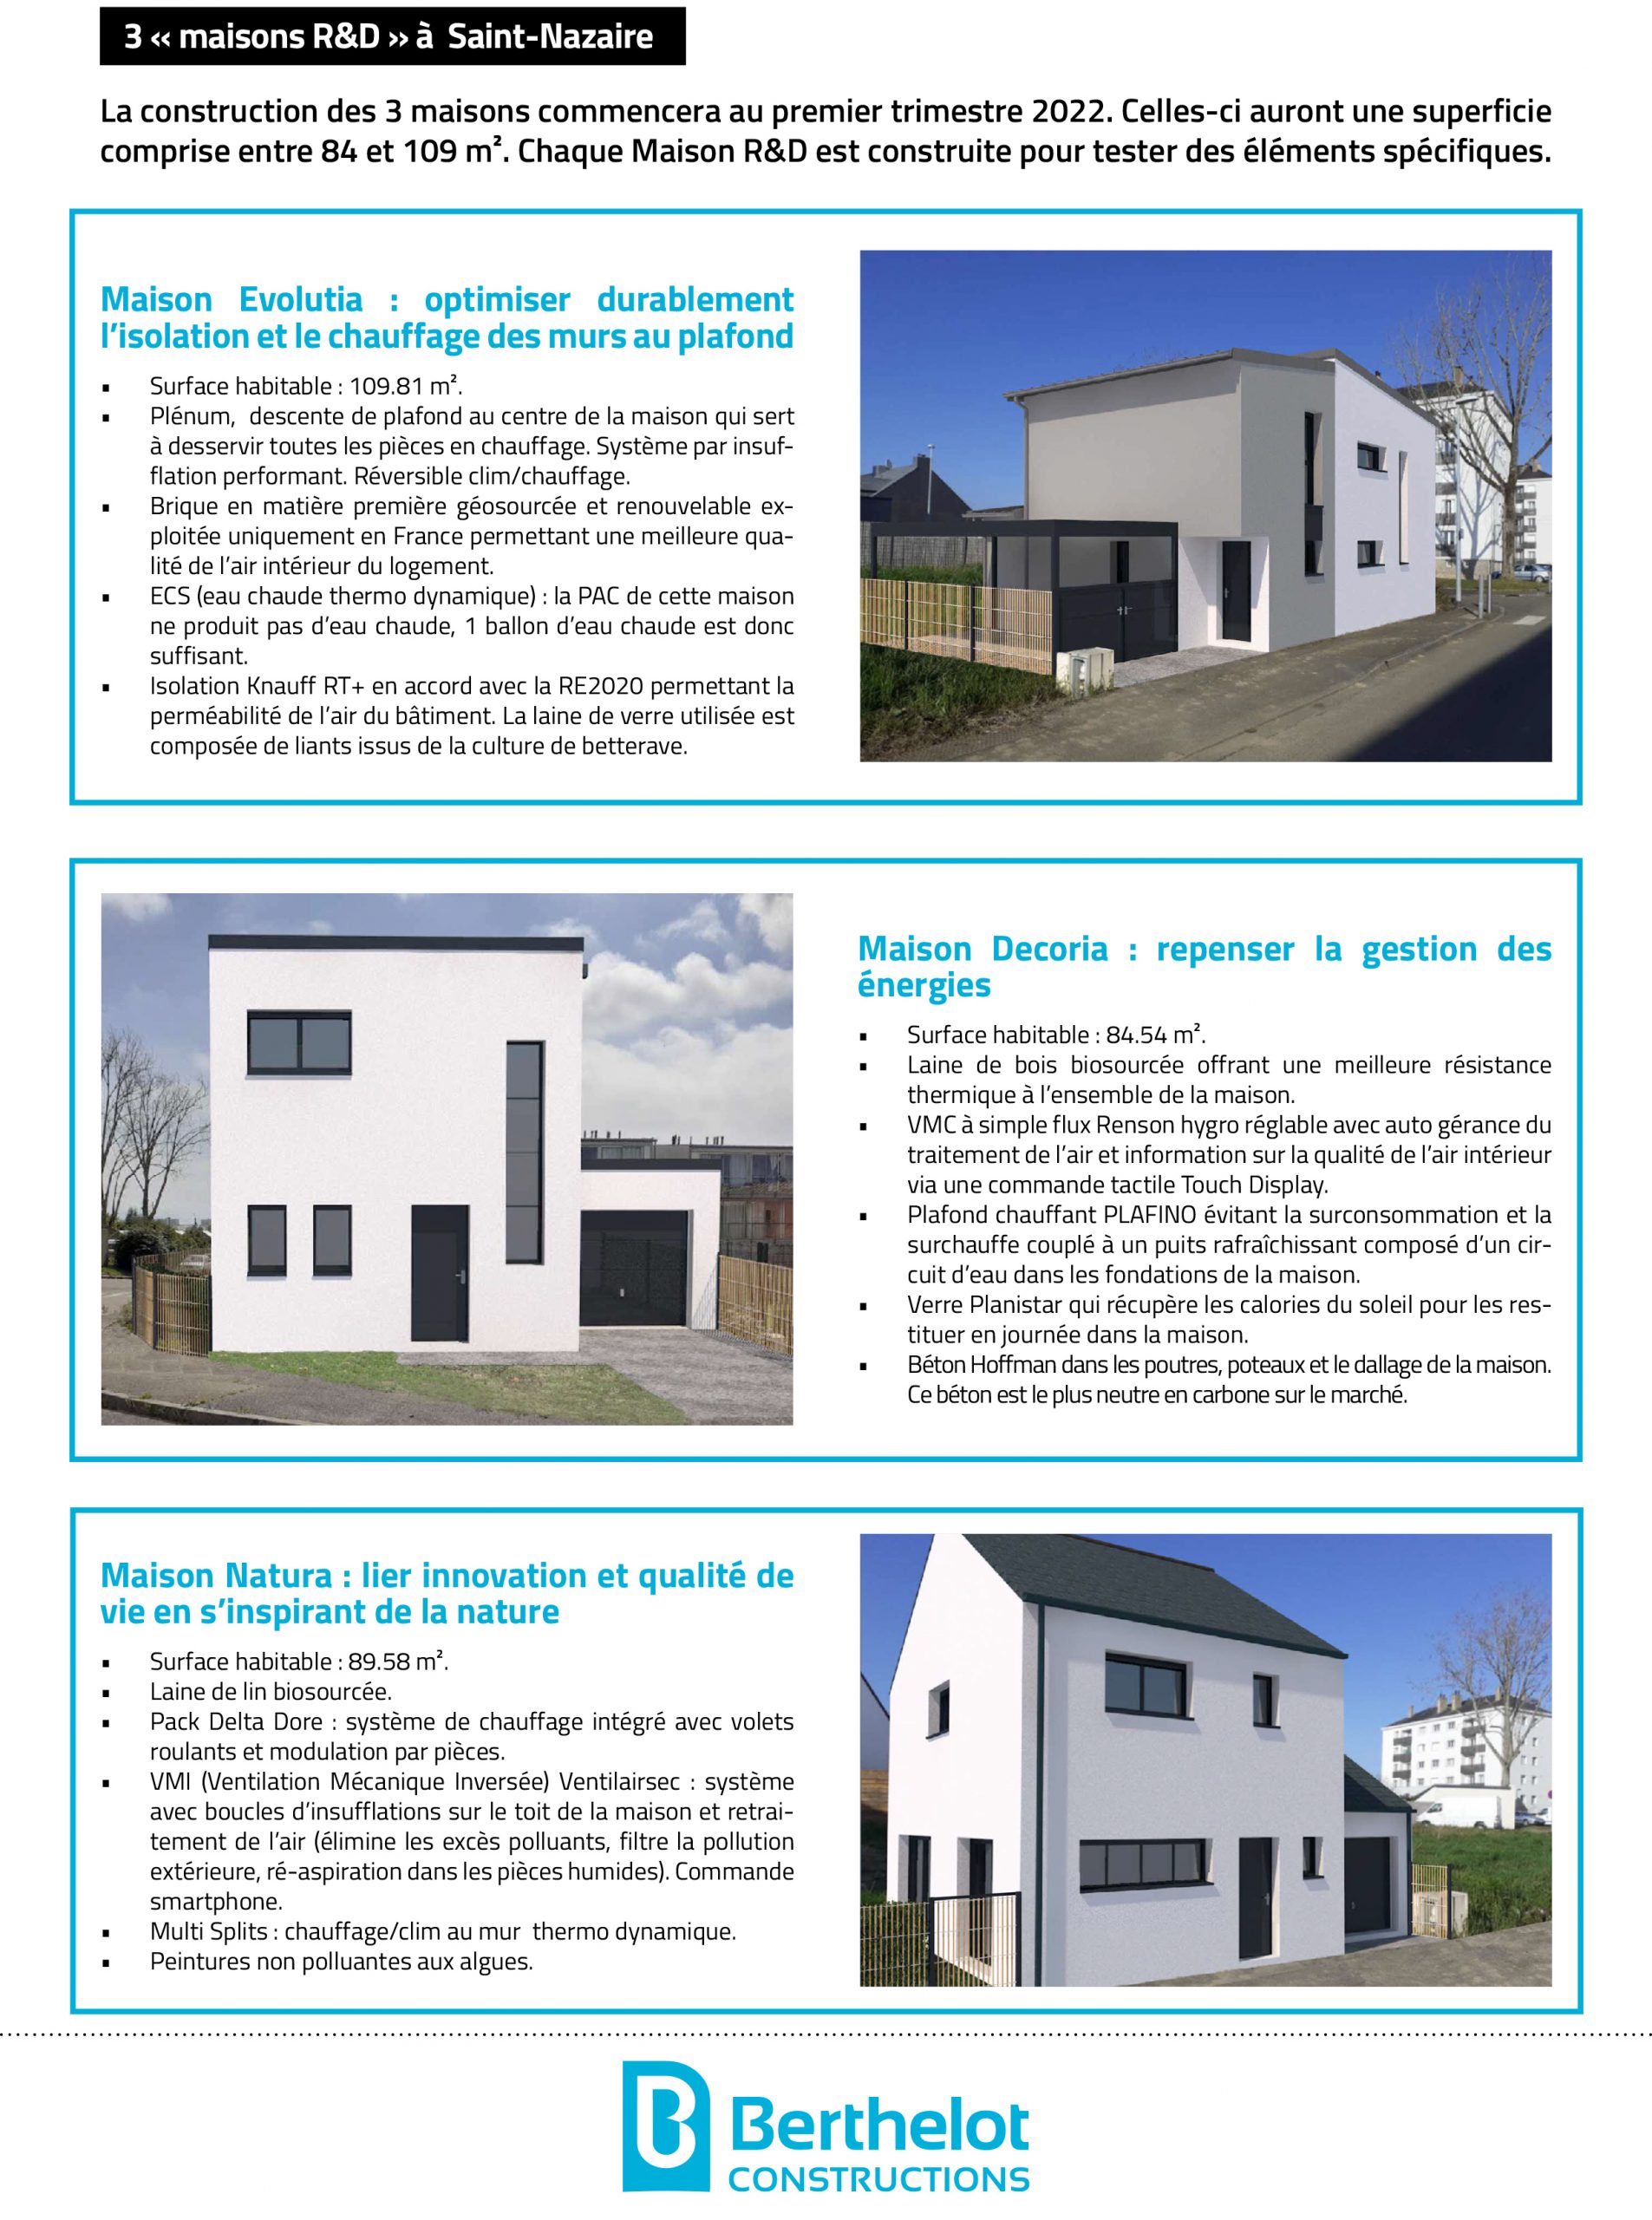 Berthelot Constructions annonce la construction de 3 maisons R&#038;D à Saint-Nazaire